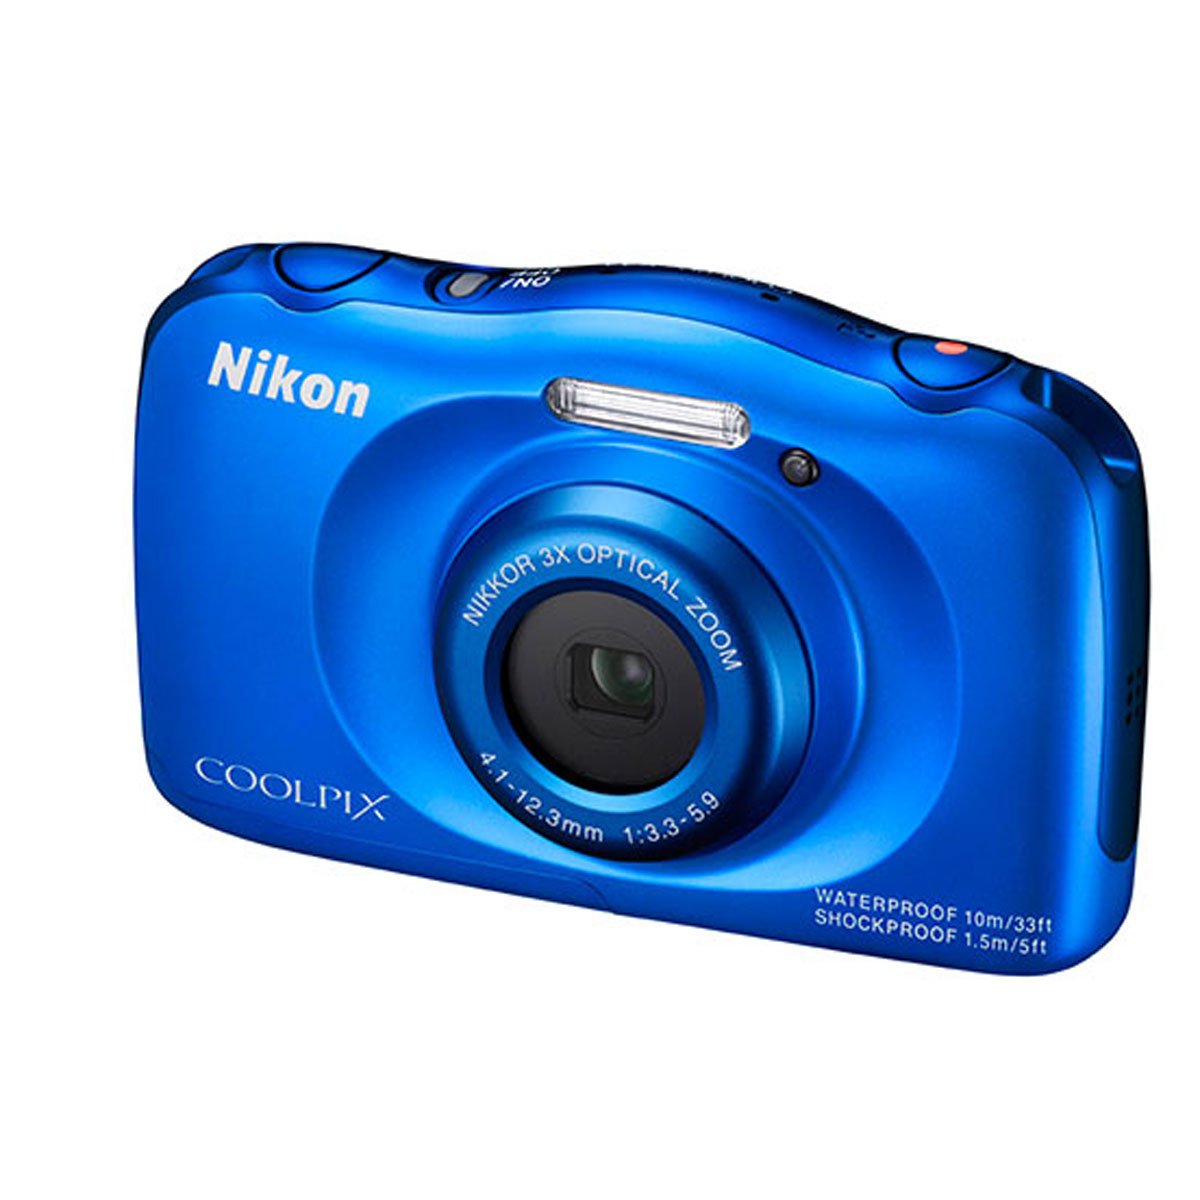 Cámara Digital Compacta Coolplix S33 13.2 Mp Nikon